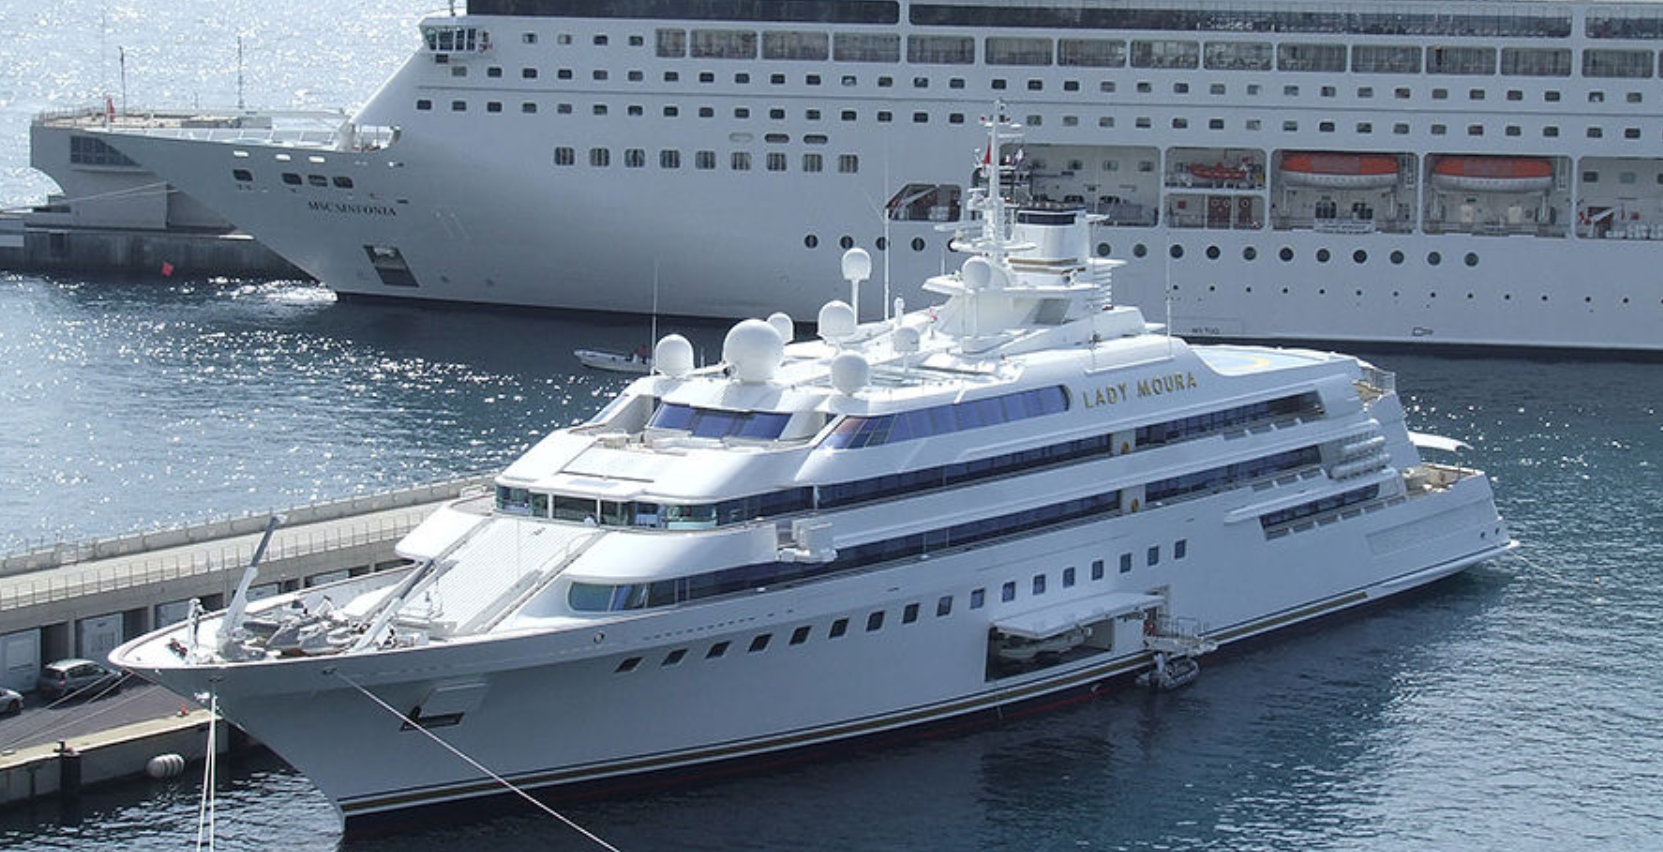 Яхта Lady Moura коштує 210 мільйонів доларів